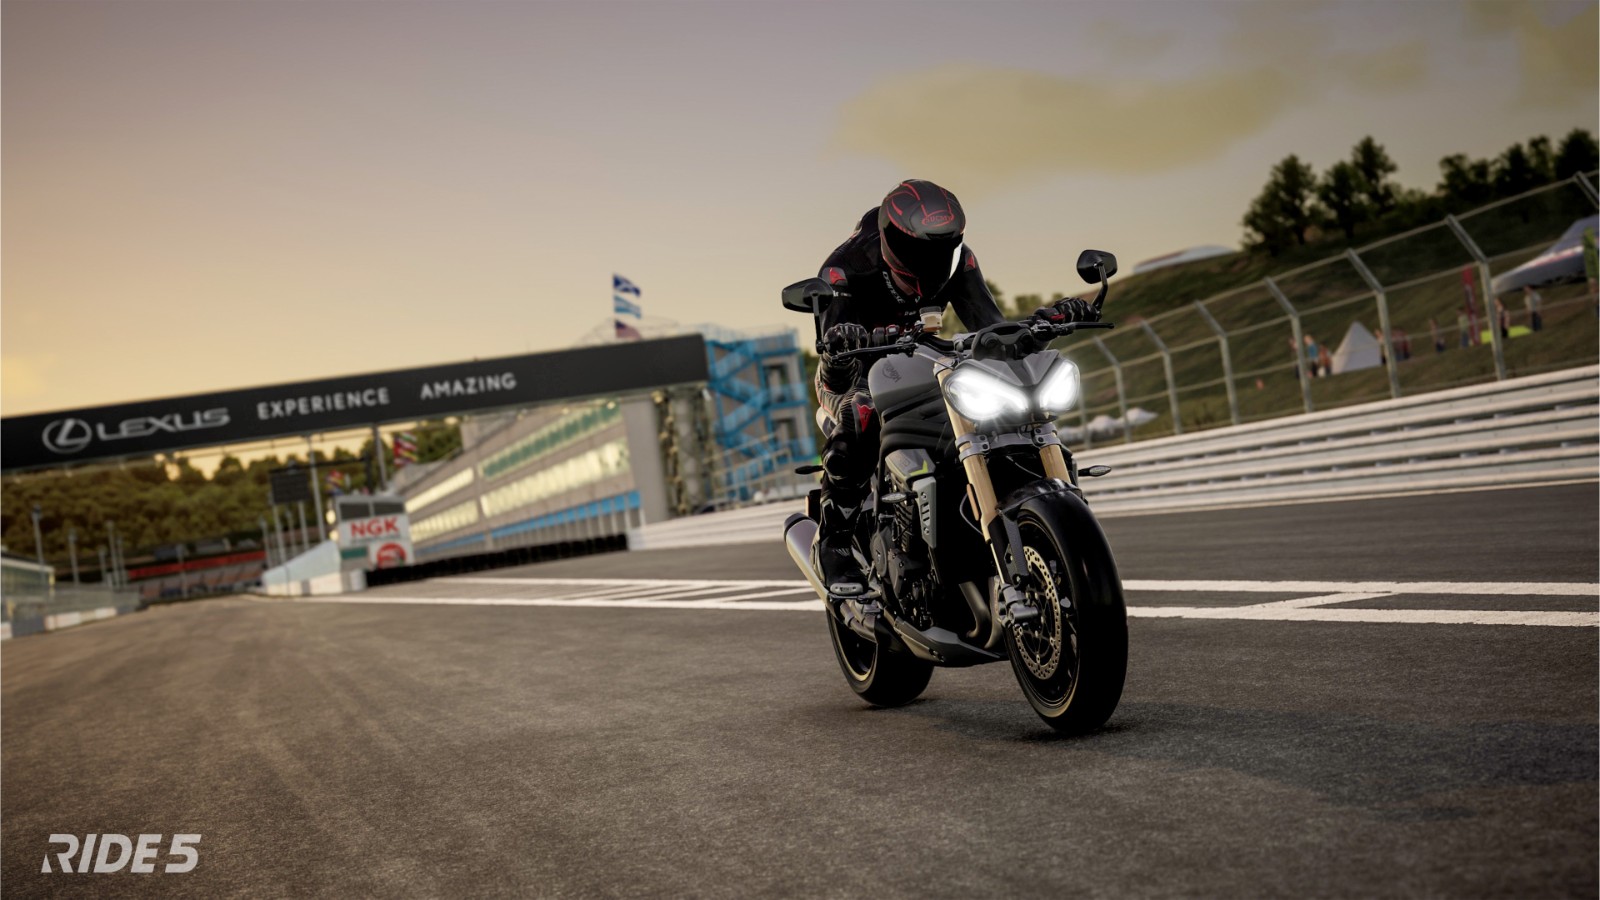 摩托竞速游戏《极速骑行5》公布 截图和预告片分享 二次世界 第3张